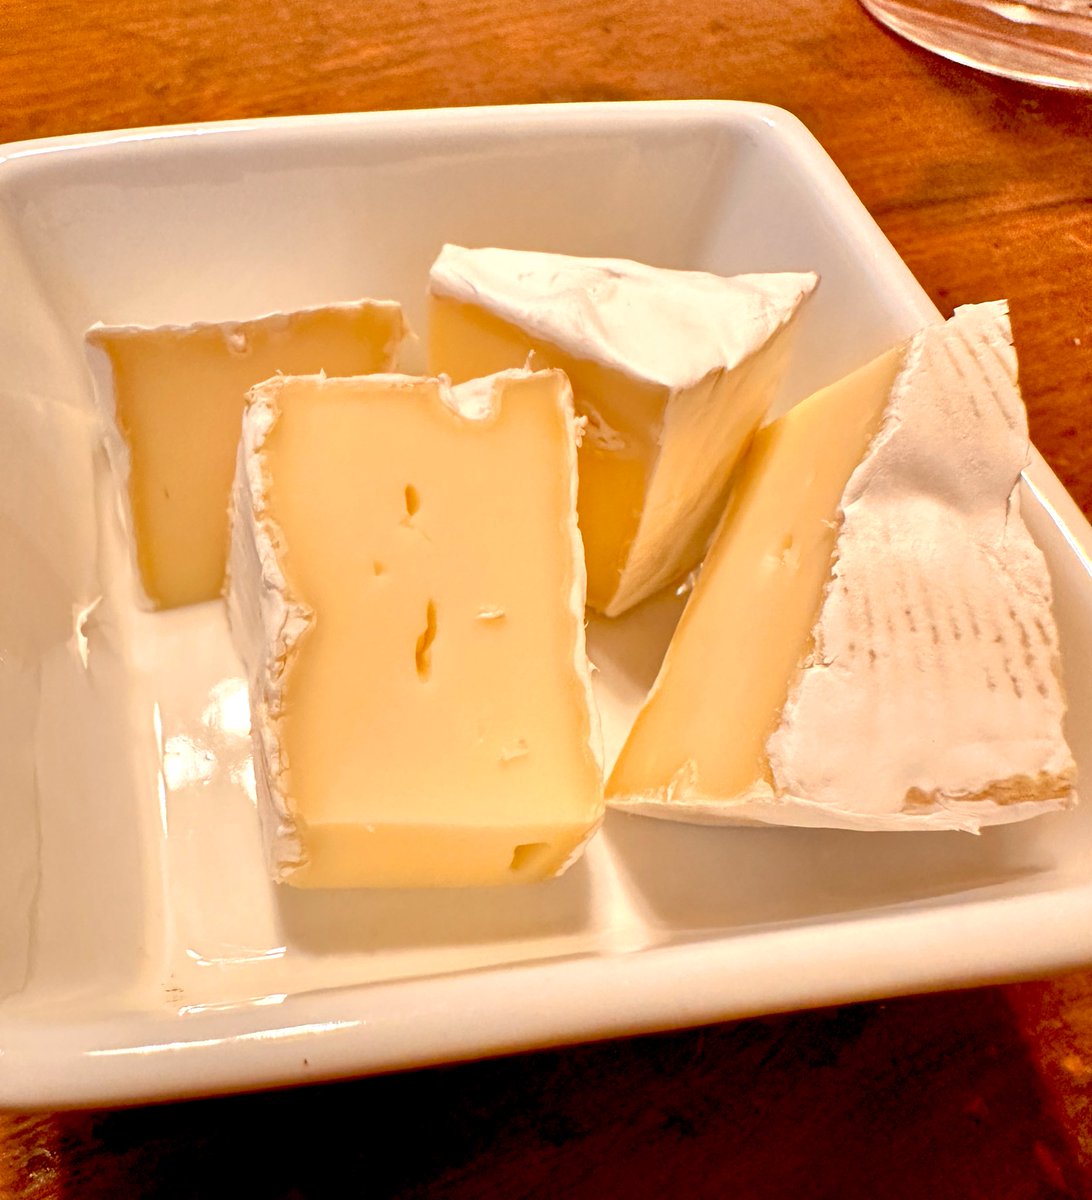 Ustedes el queso Brie o el Camembert, se lo comen con su corteza o se la quitan?